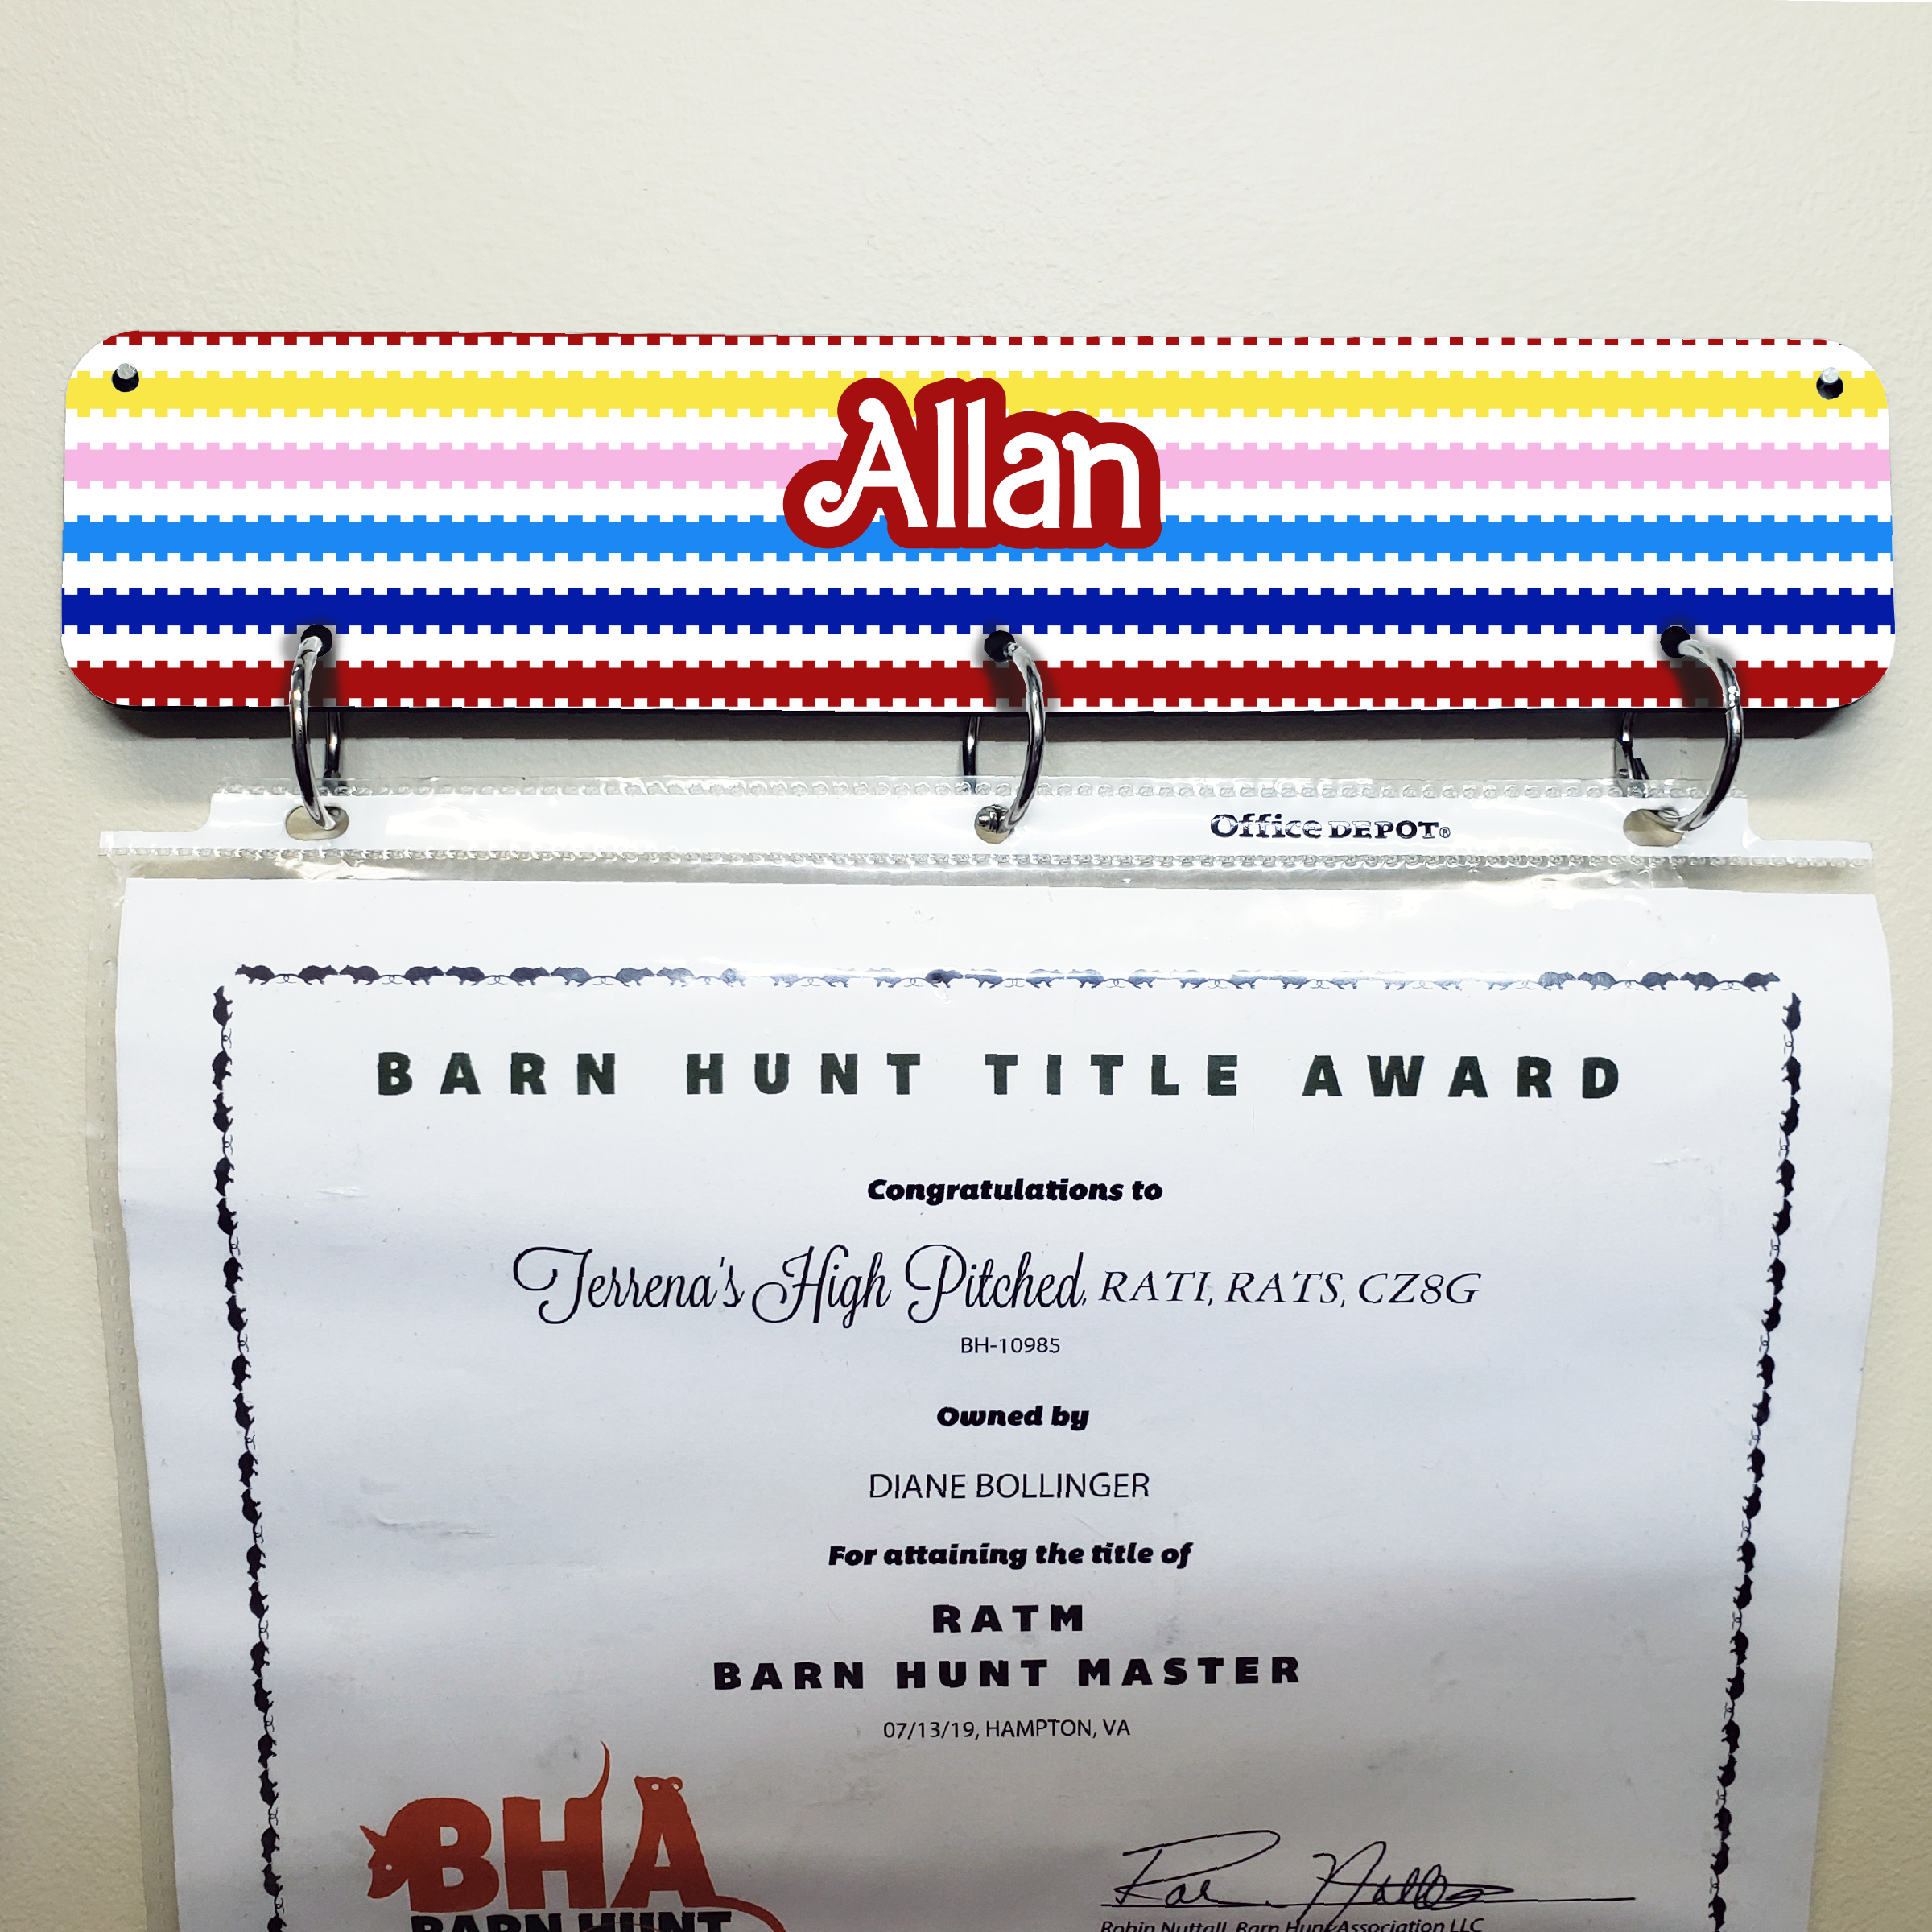 Allan - Certificate Display